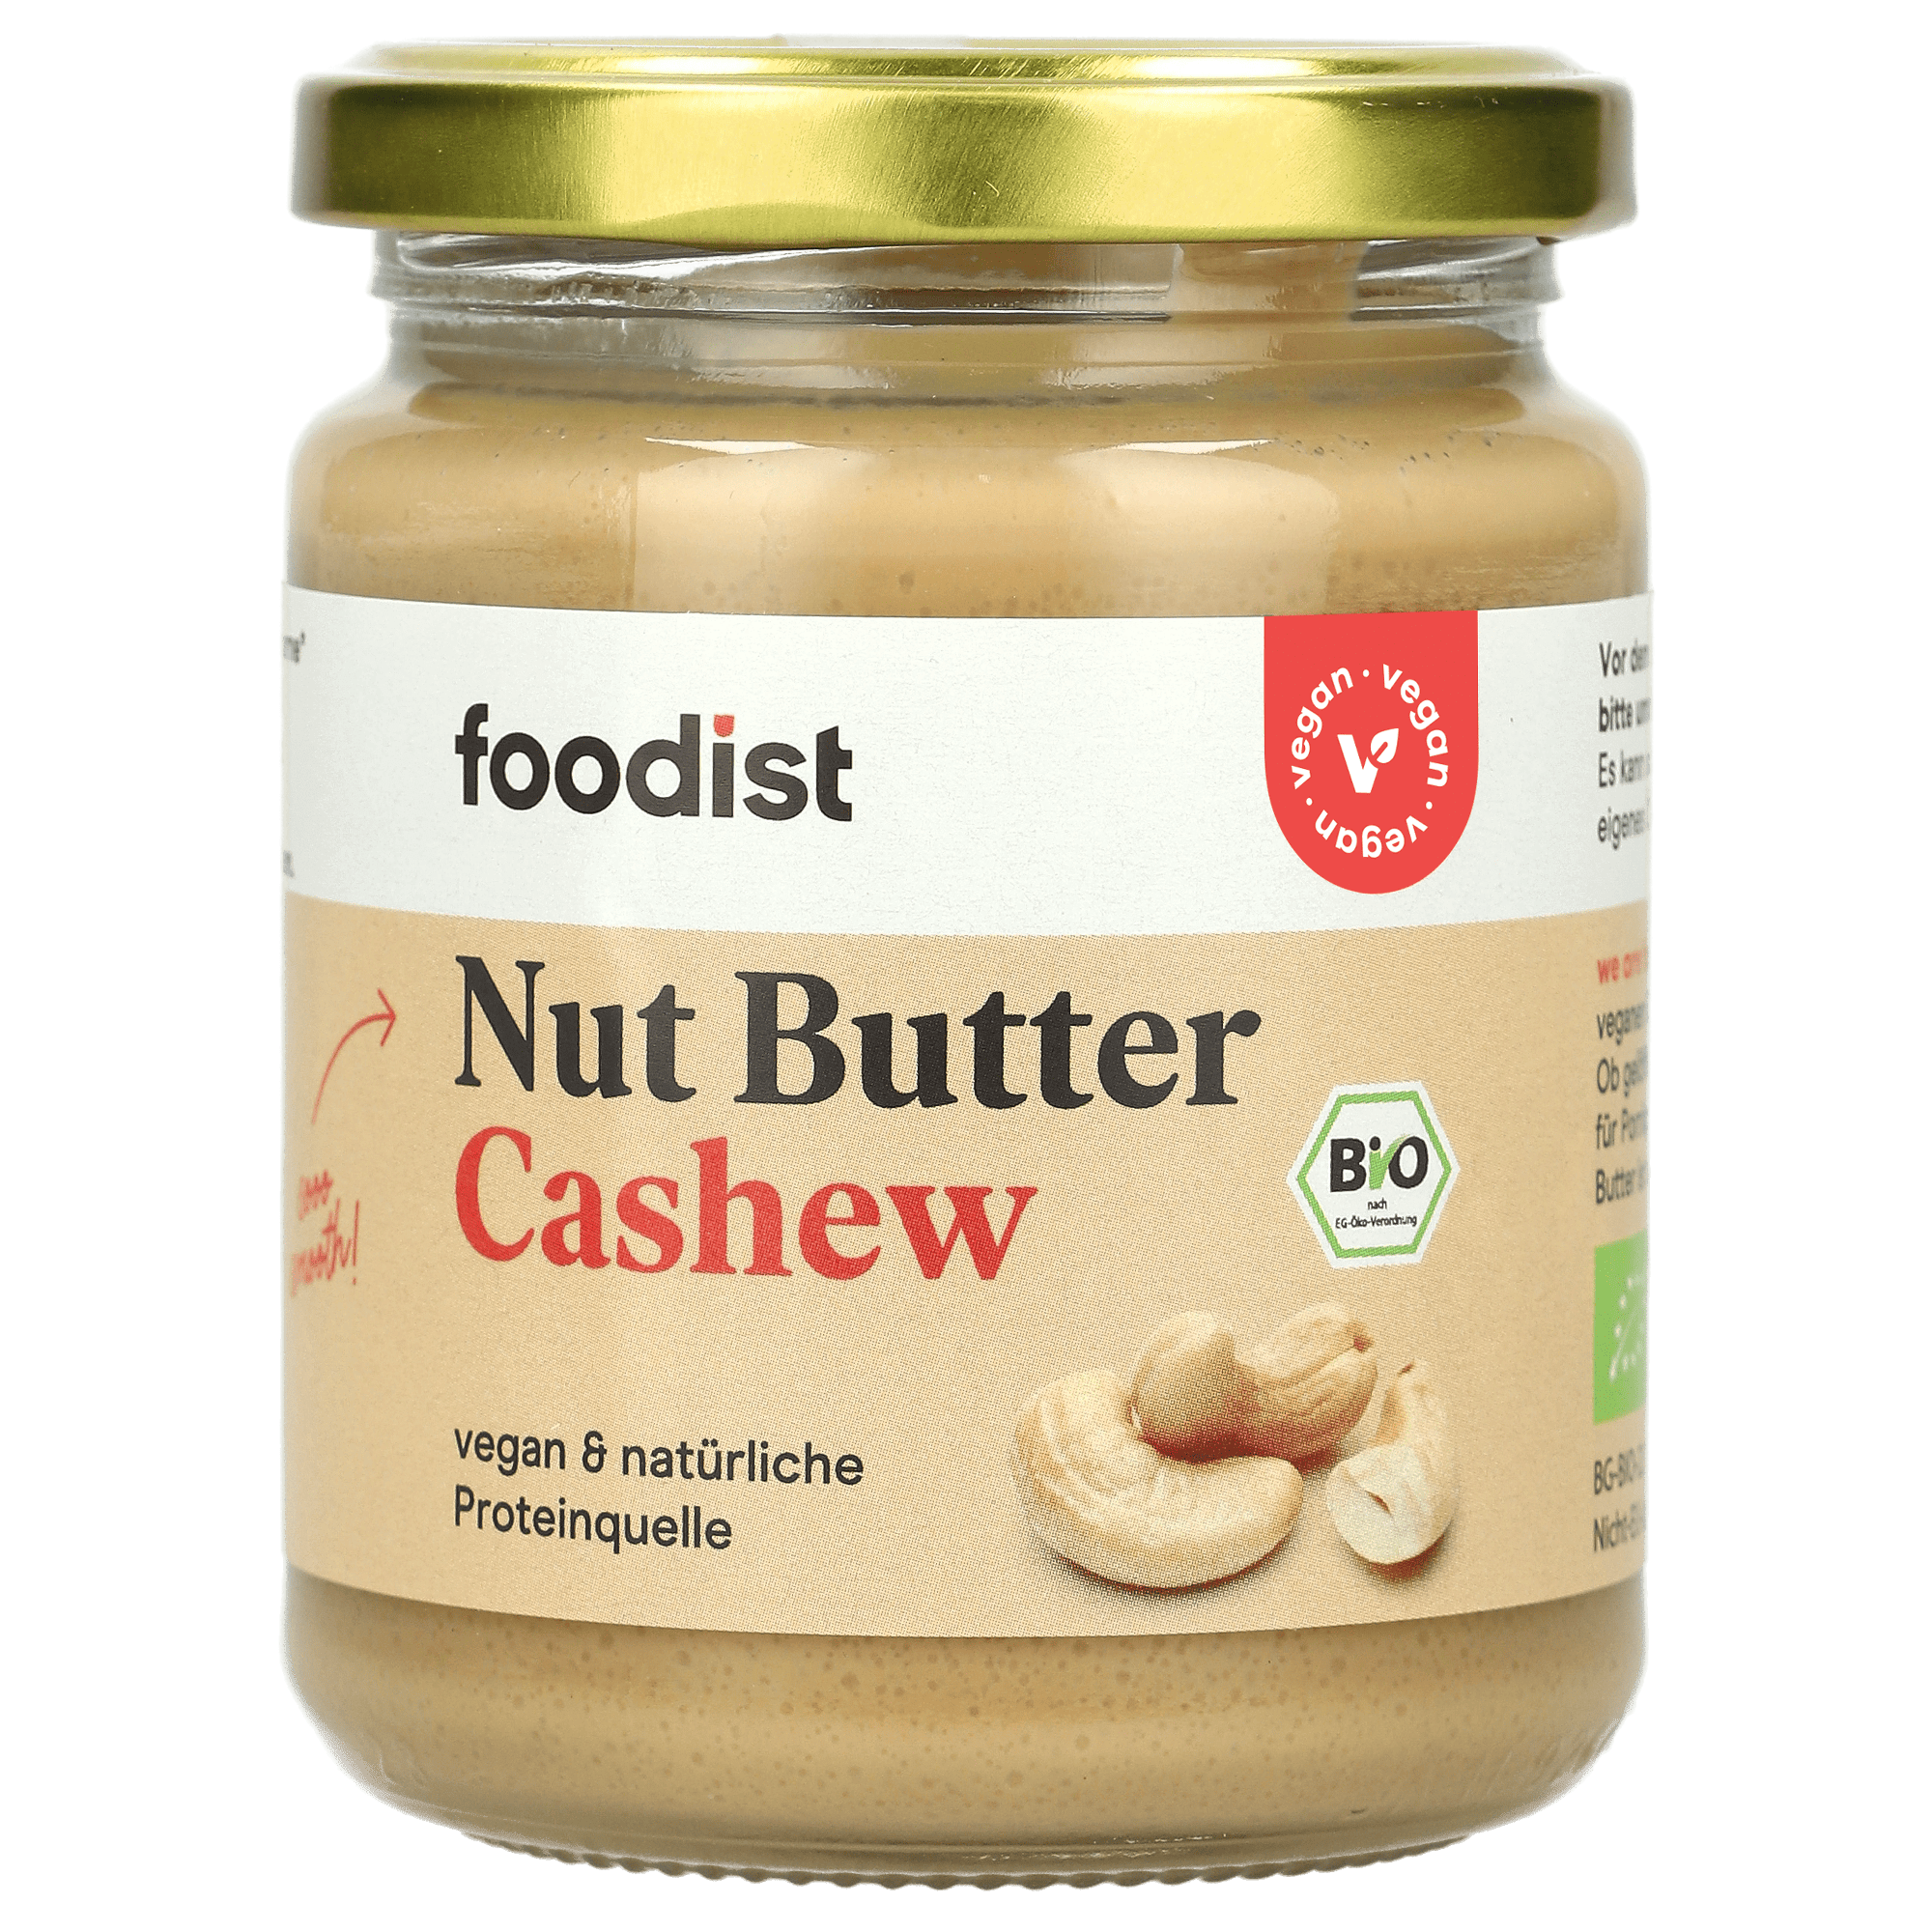 Foodist Nut Butter Cashew